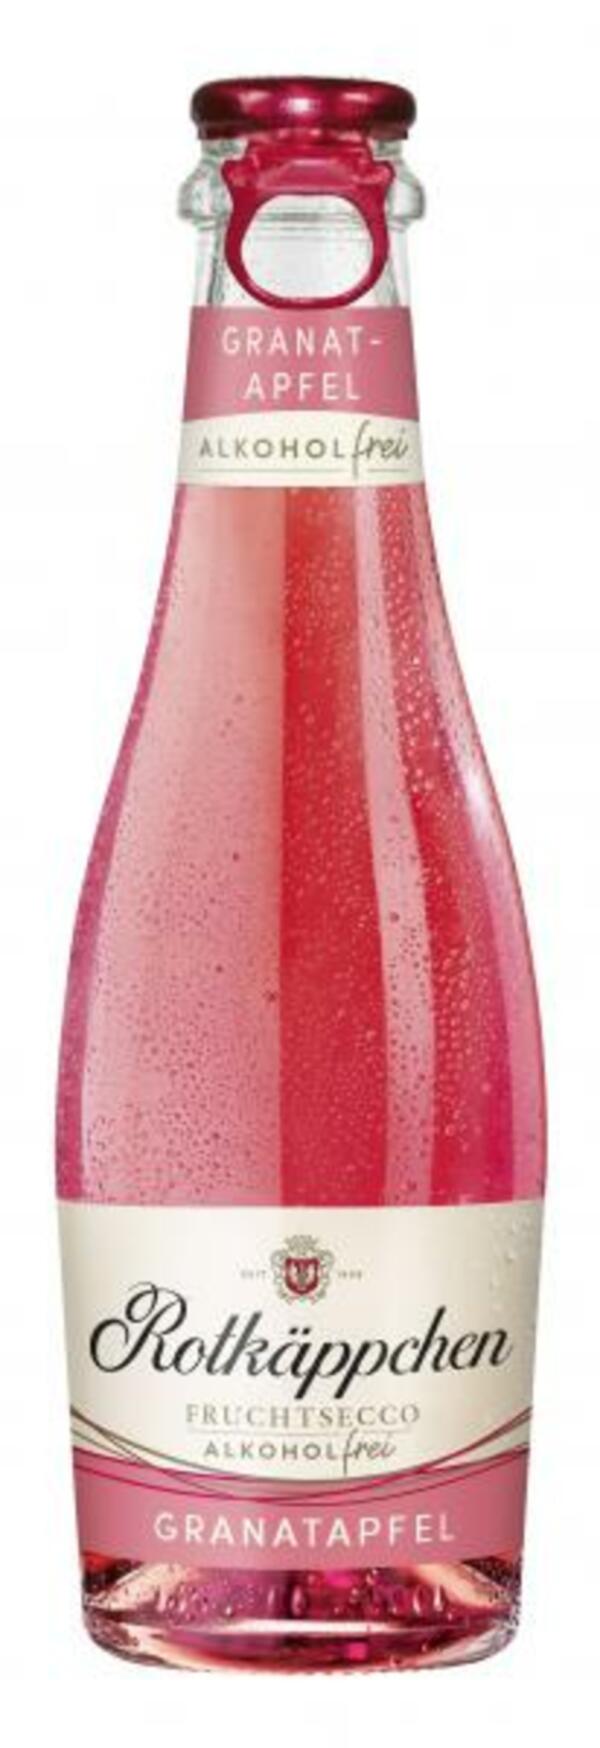 Bild 1 von Rotkäppchen Fruchtsecco Granatapfel alkoholfrei